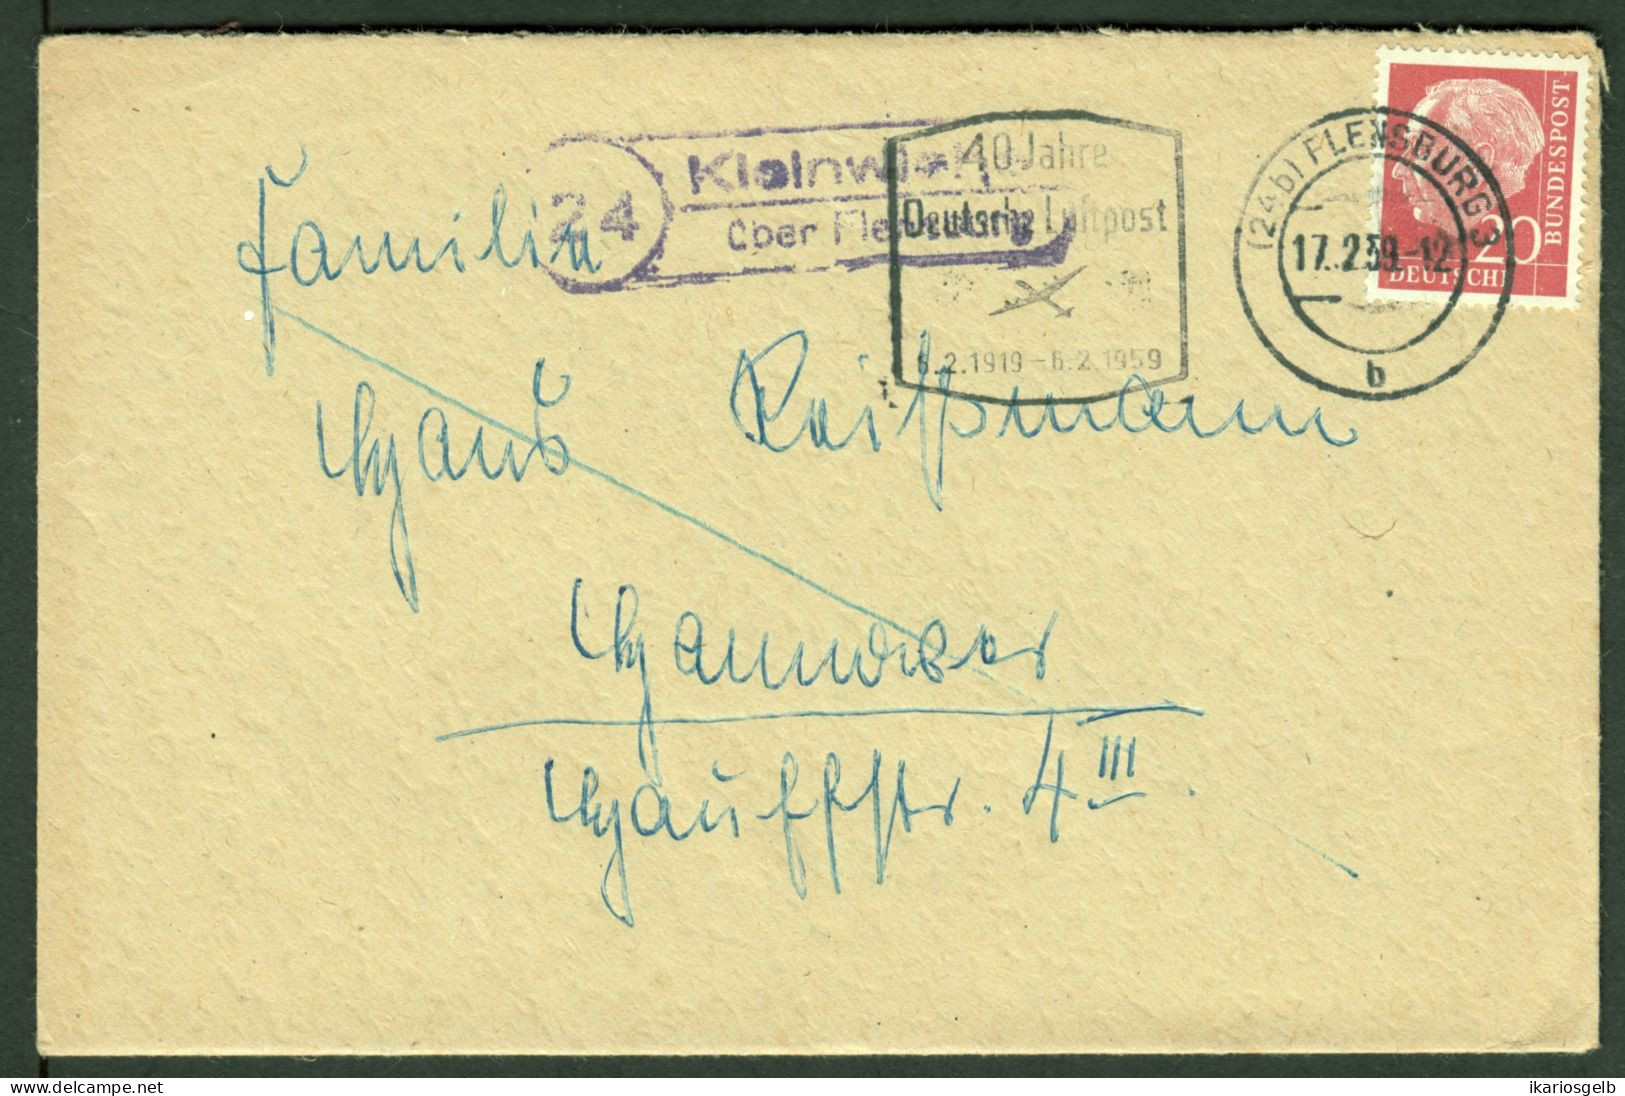 KLEINWIEHE über FLENSBURG = LINDEWITT 1959 LANDPOSTSTEMPEL Blau 20Pf-HeußI Auf Bedarfsbrief > Hannover - Briefe U. Dokumente